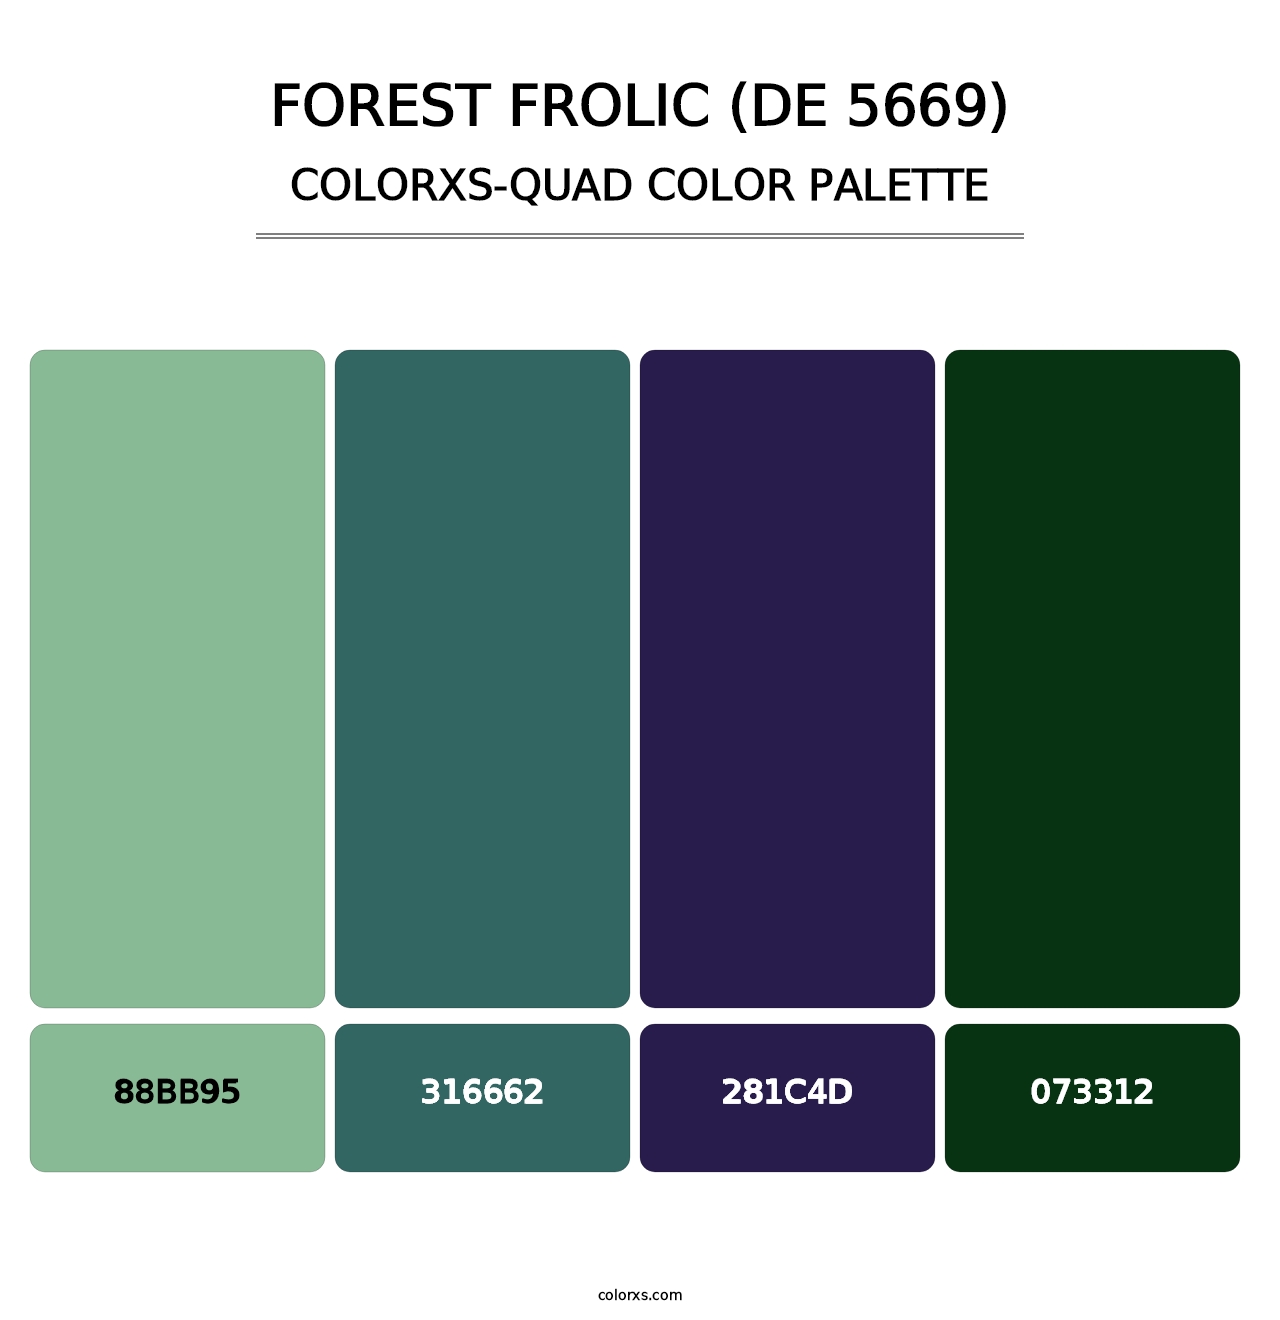 Forest Frolic (DE 5669) - Colorxs Quad Palette